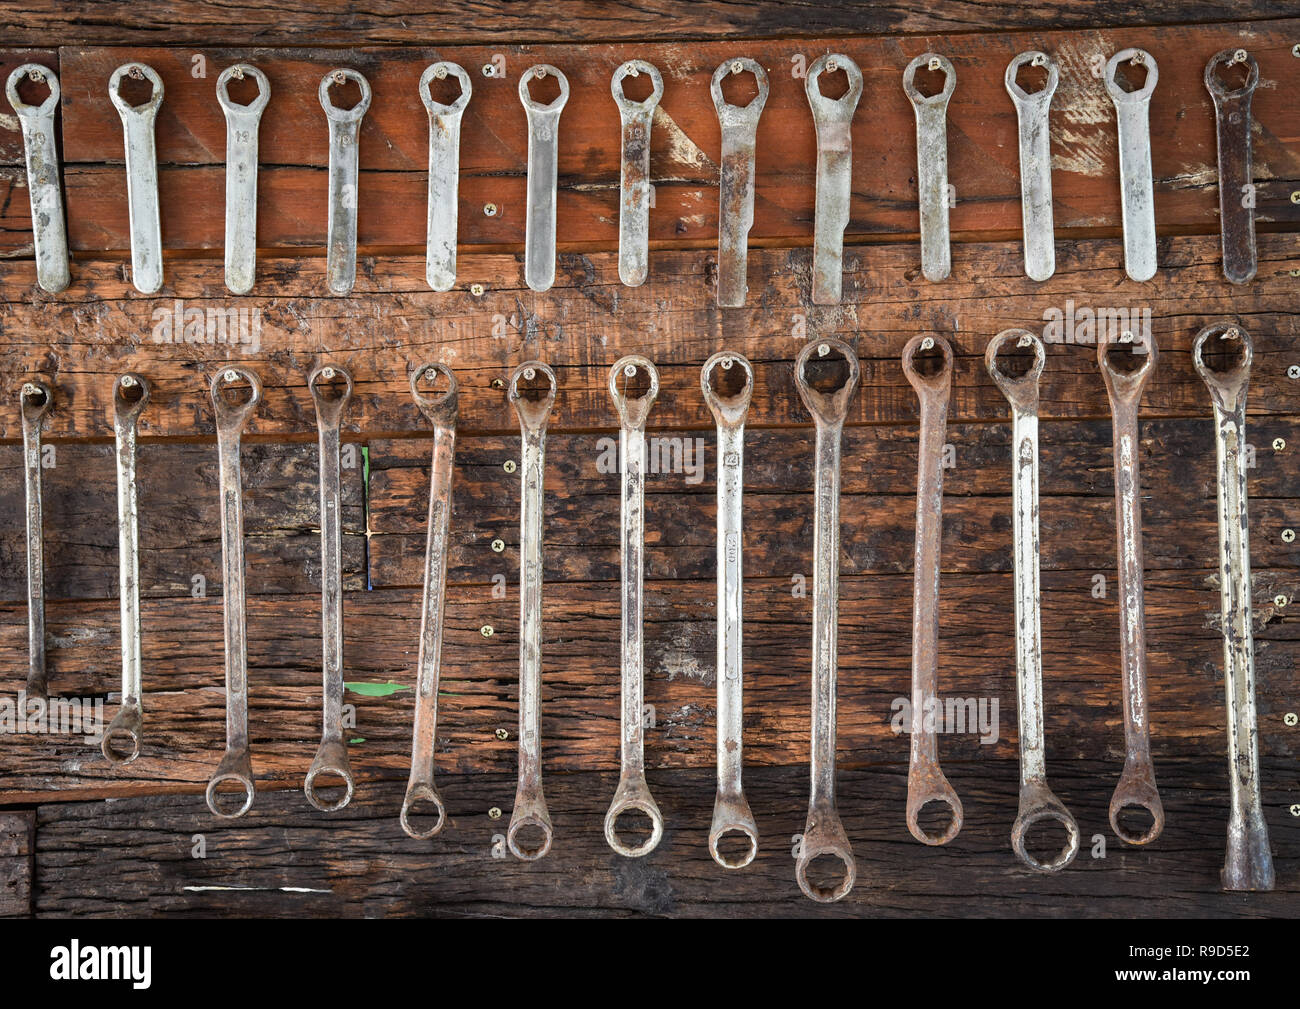 Handwerker Werkzeug Schlüssel manuell/Auto Service Mechaniker tools mit  alten Schraubenschlüssel an der hölzernen Wand - Mechanische werkzeuge  Handwerker mit für die Arbeit oder Reparatur Stockfotografie - Alamy